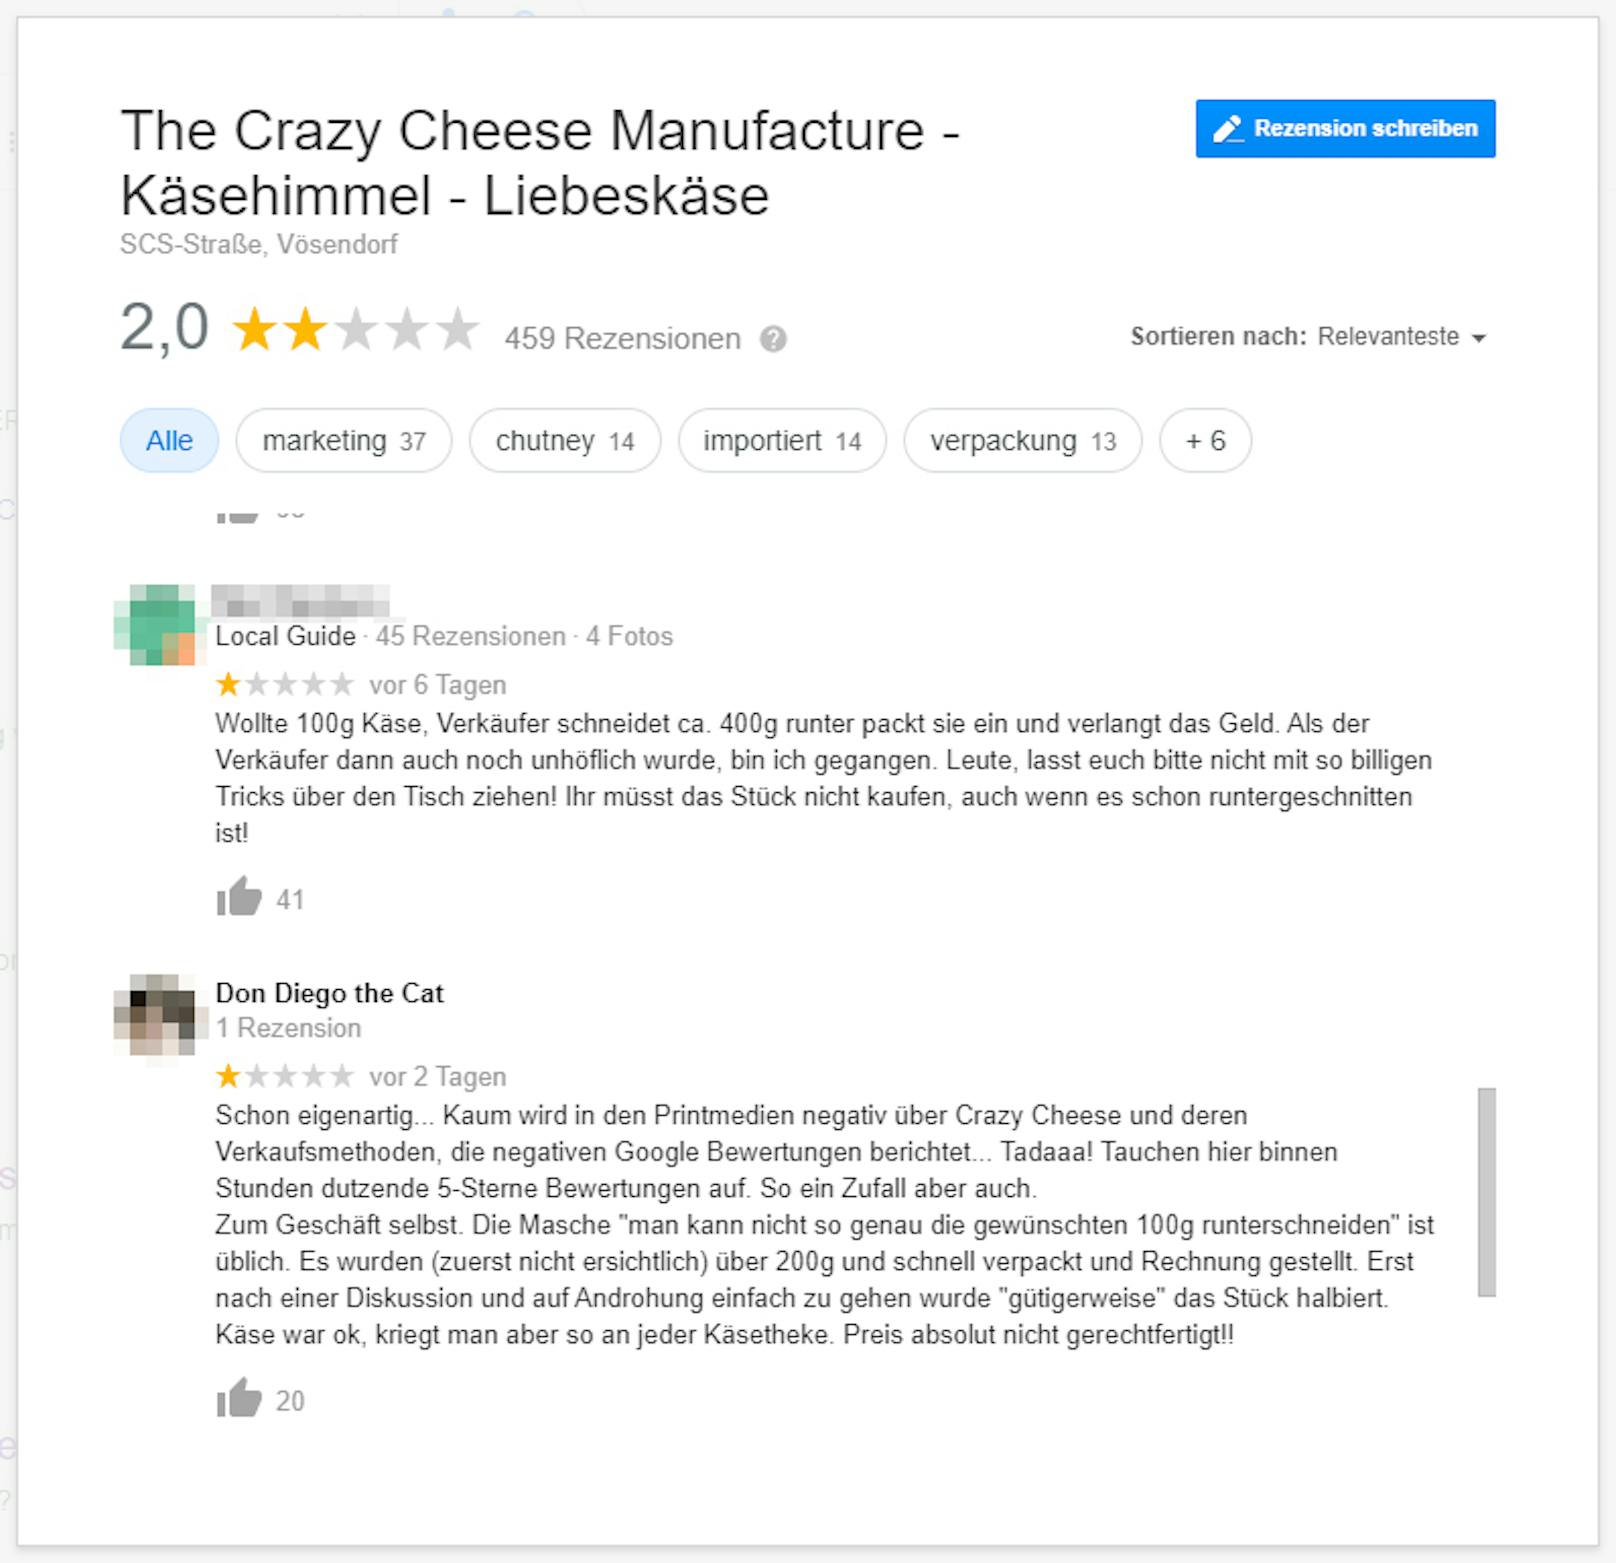 Abzock-Vorwürfe gegen "The Crazy Cheese Manufacture" in den Google Rezensionen. Screenshots vom 24. August 2020